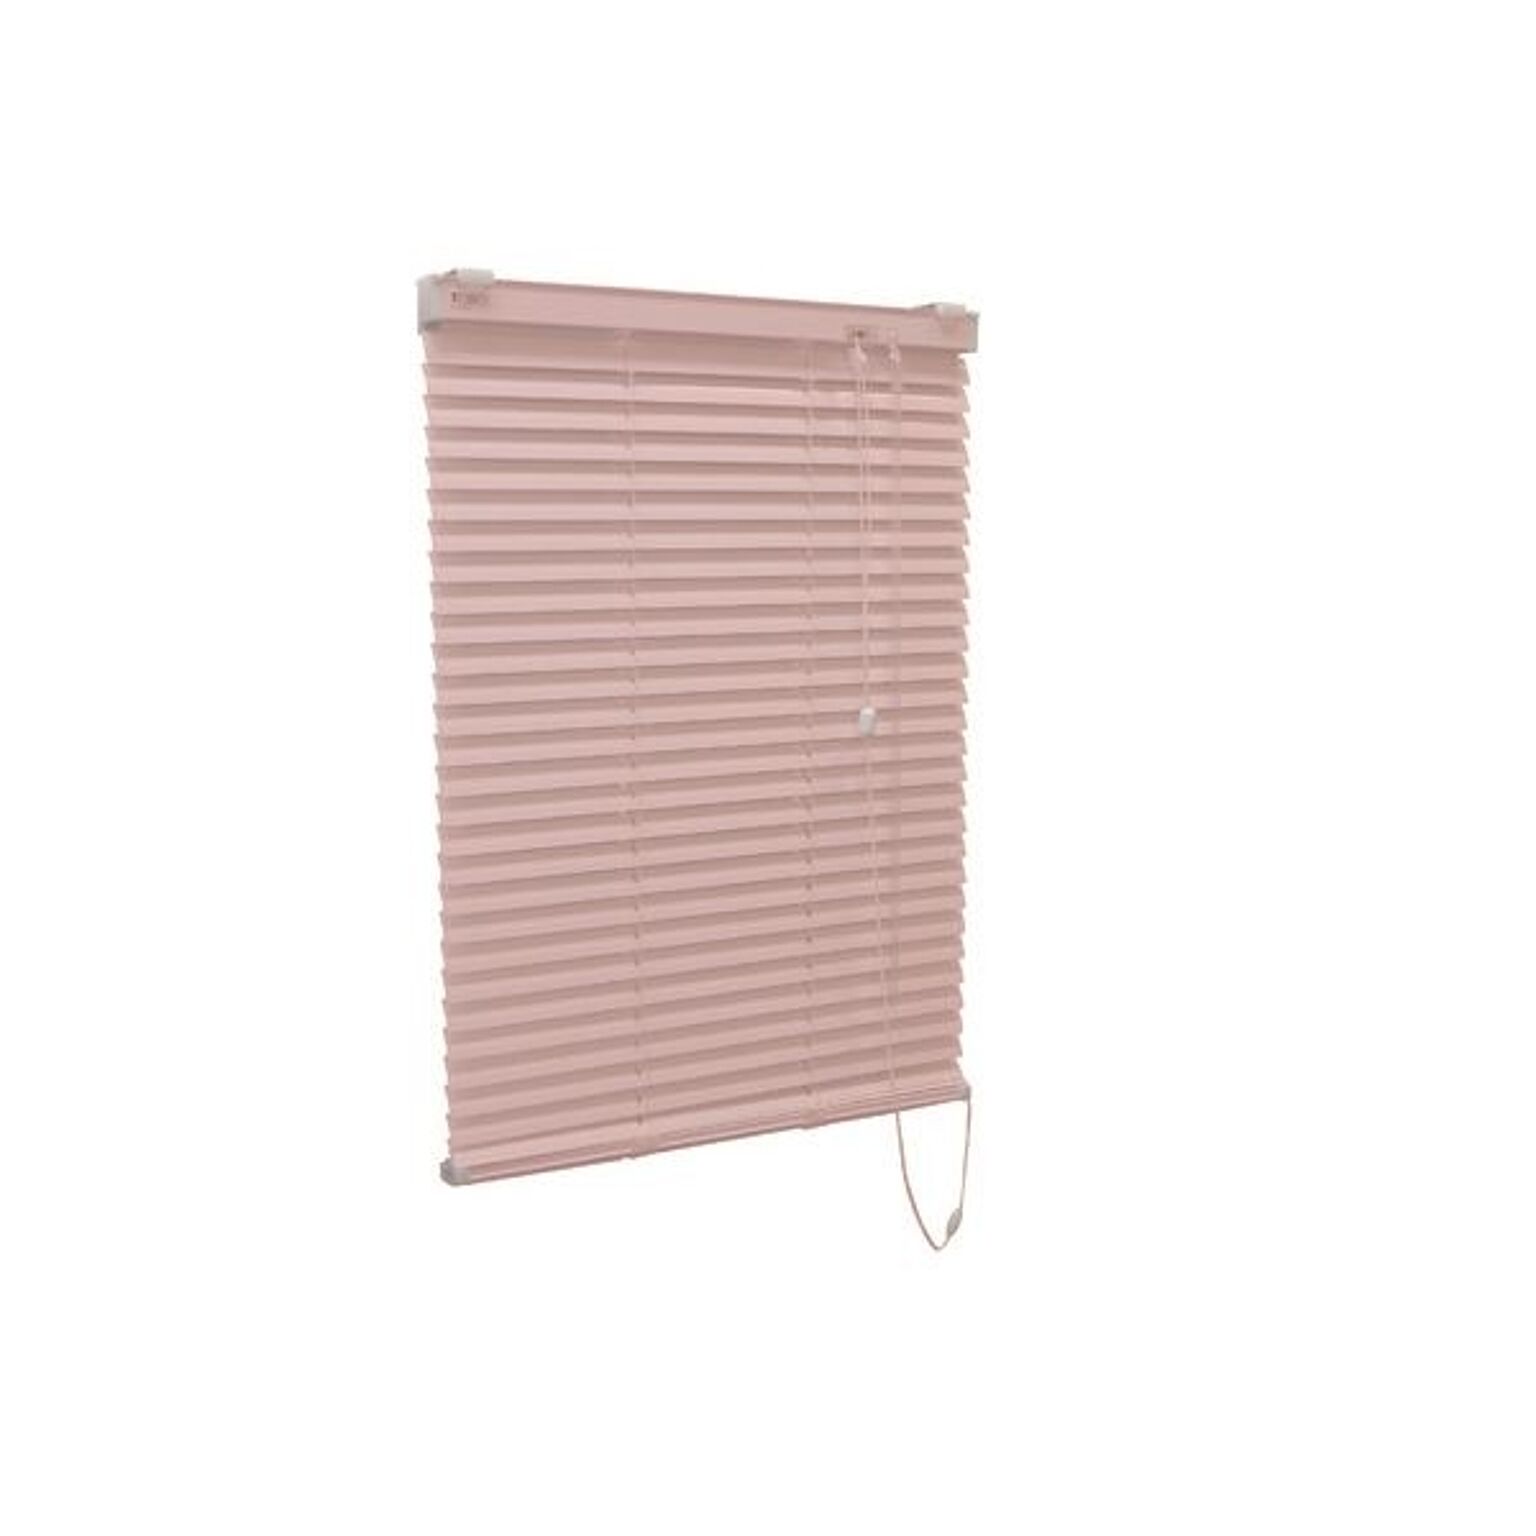 アルミ製 ブラインド 【60cm×183cm ピンク】 日本製 折れにくい 光量調節 熱効率向上 『ティオリオ』【代引不可】